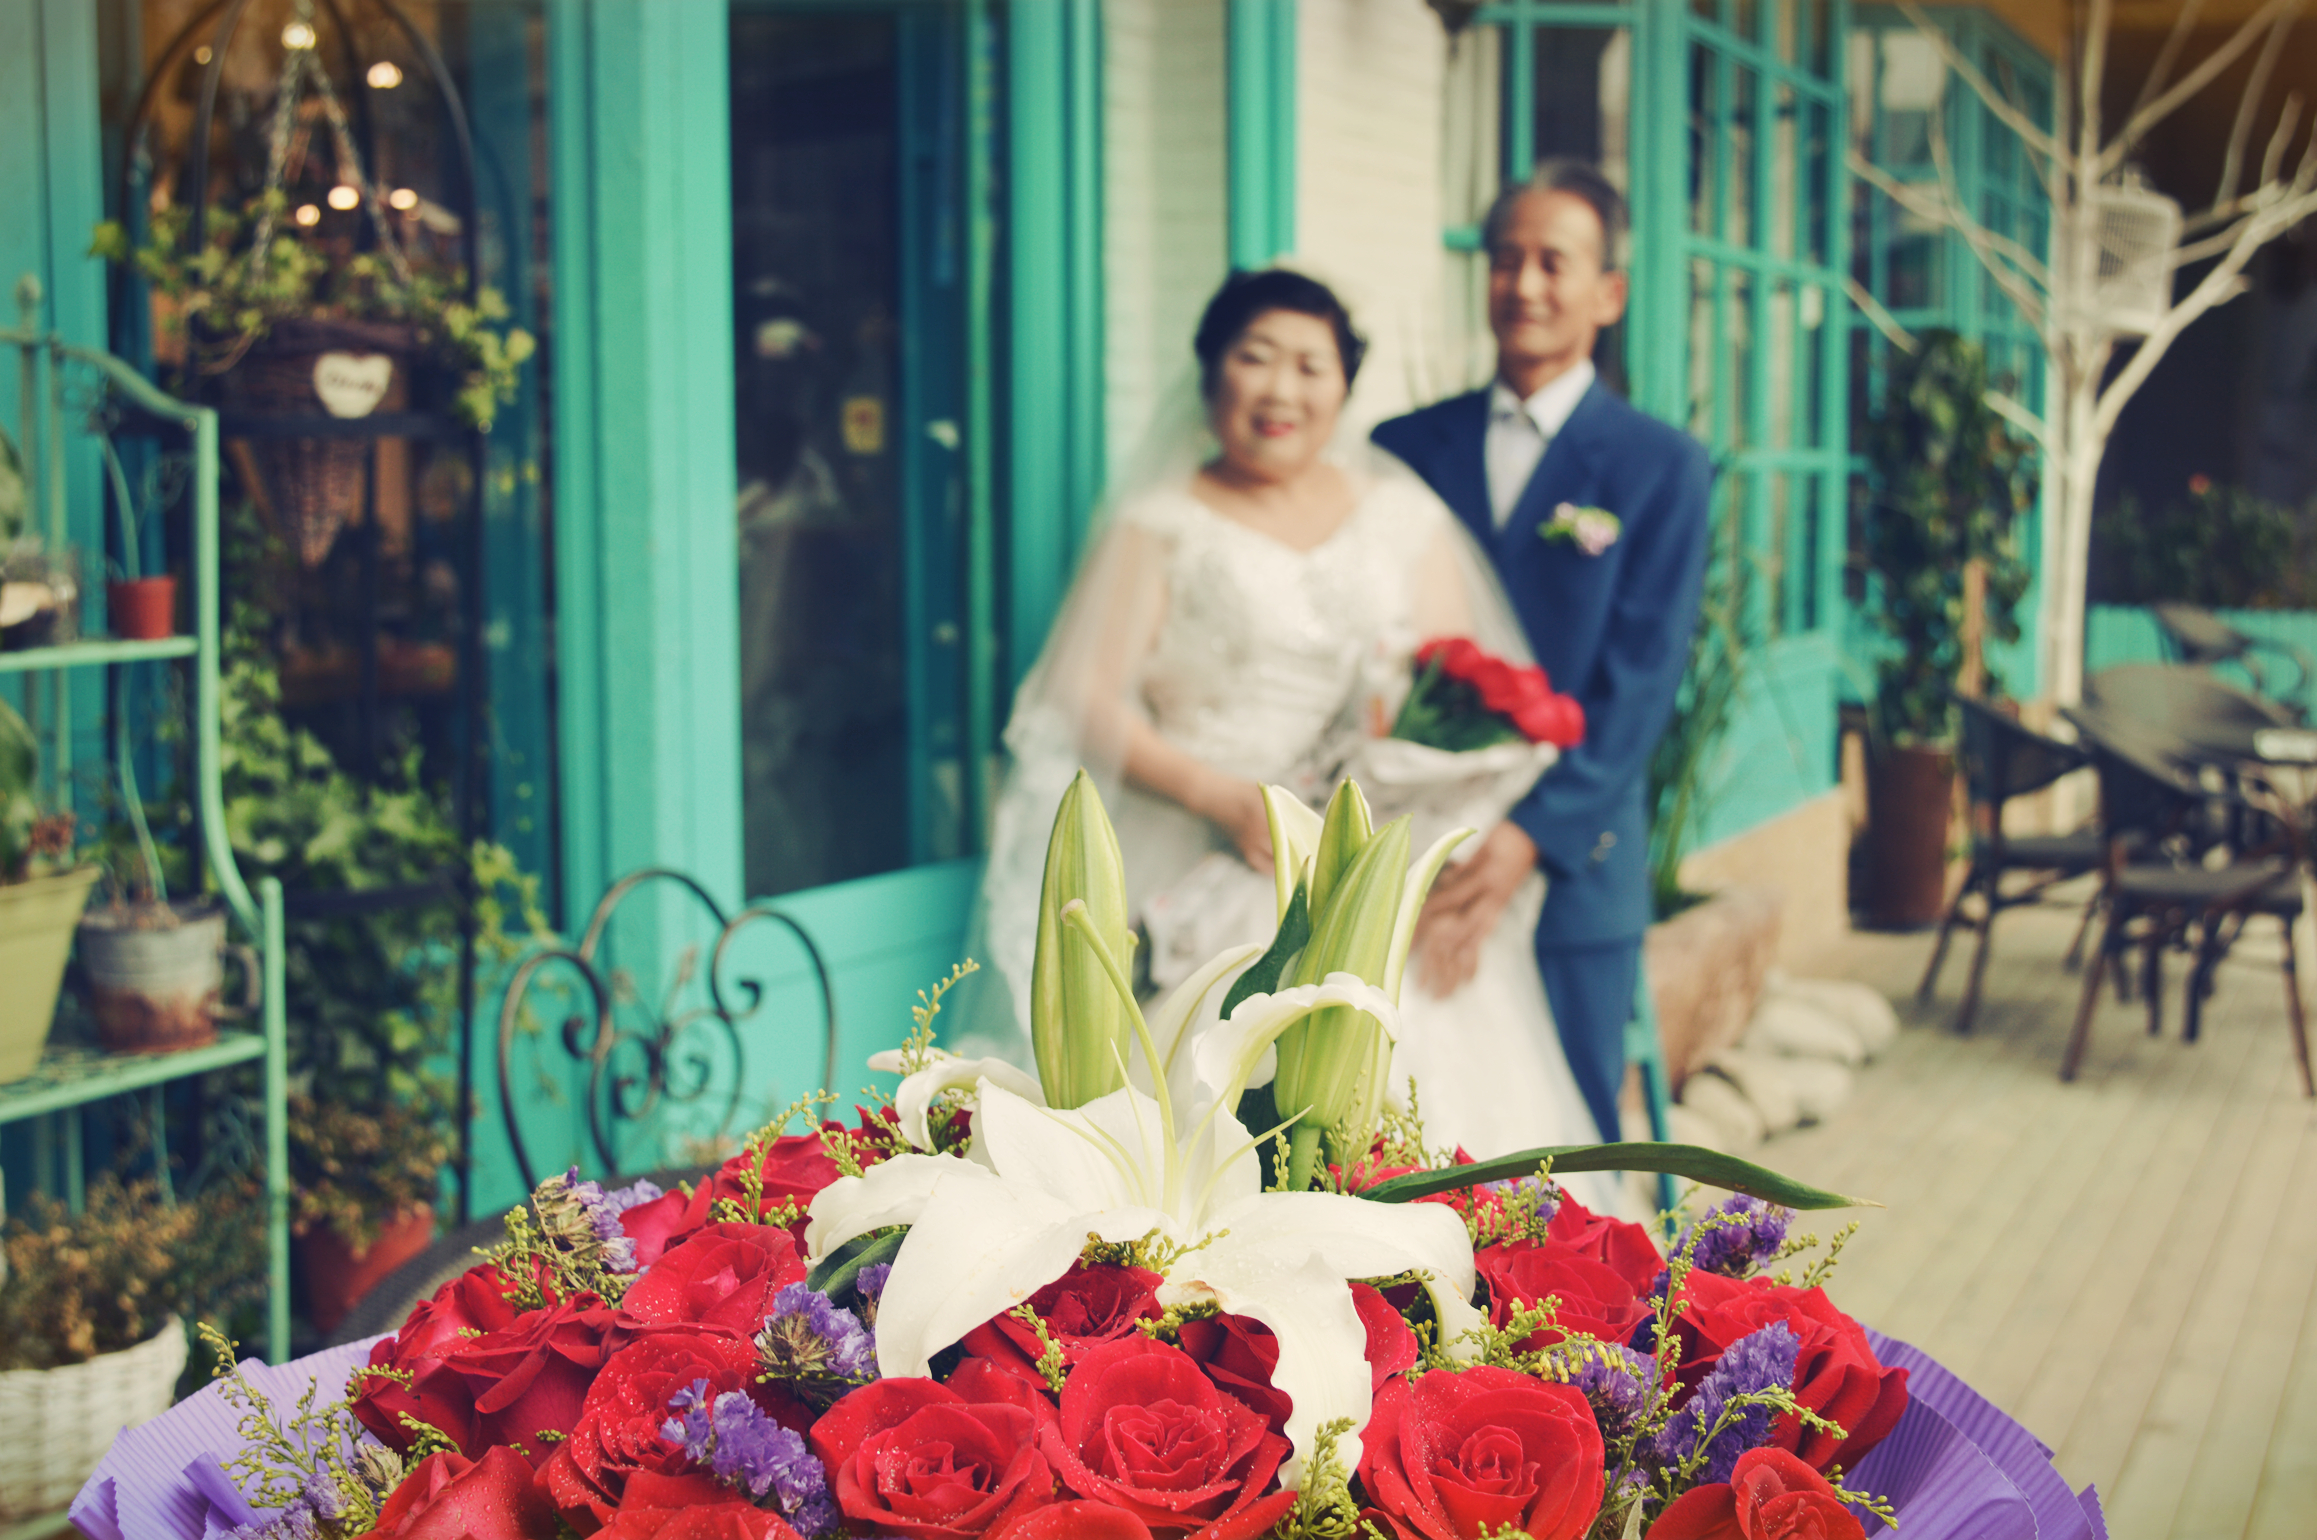 潍坊化妆学校茗艺校长父母过红宝石婚周年纪念